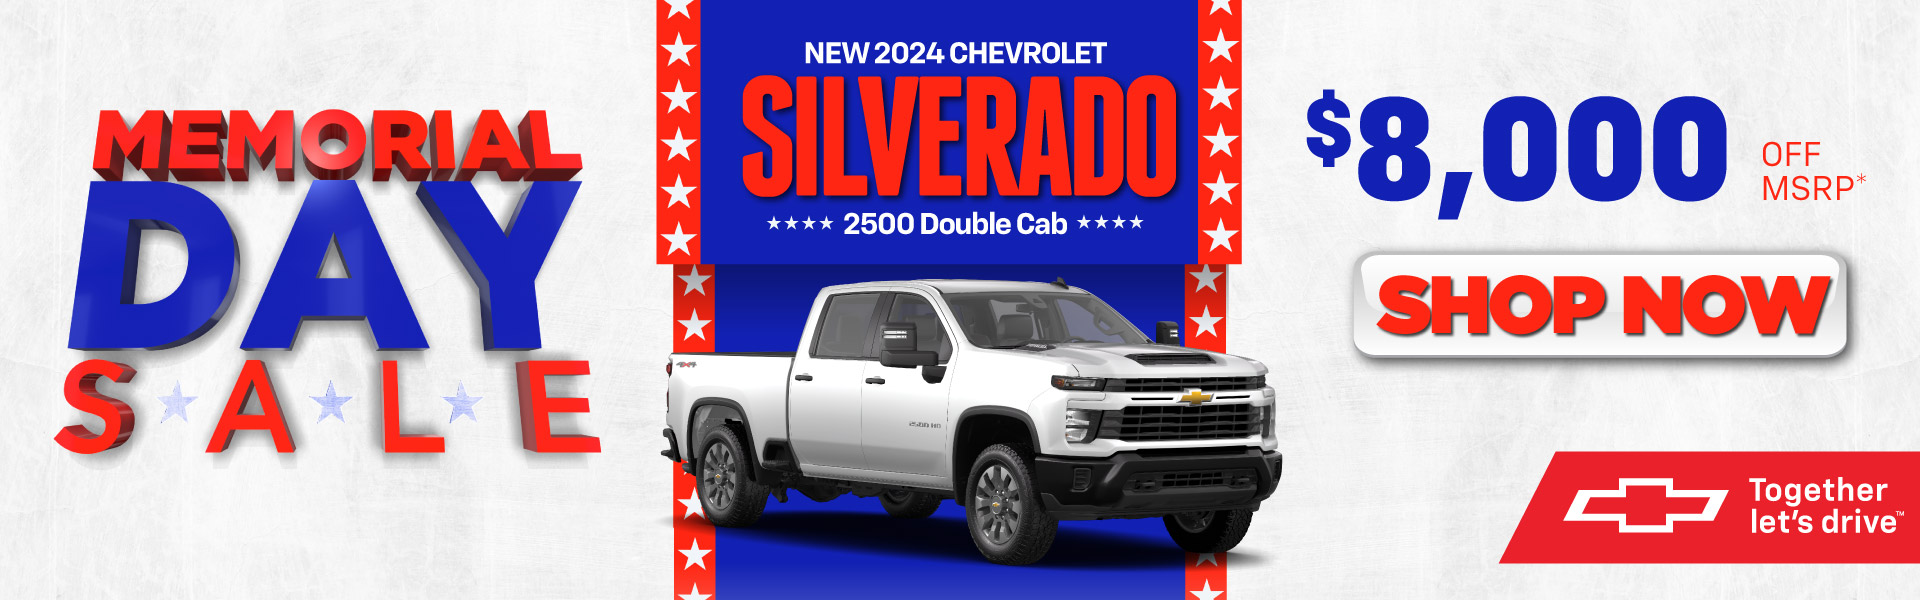 2024 Chevrolet Silverado 2500 - $8,000 Off MSRP* - Shop Now